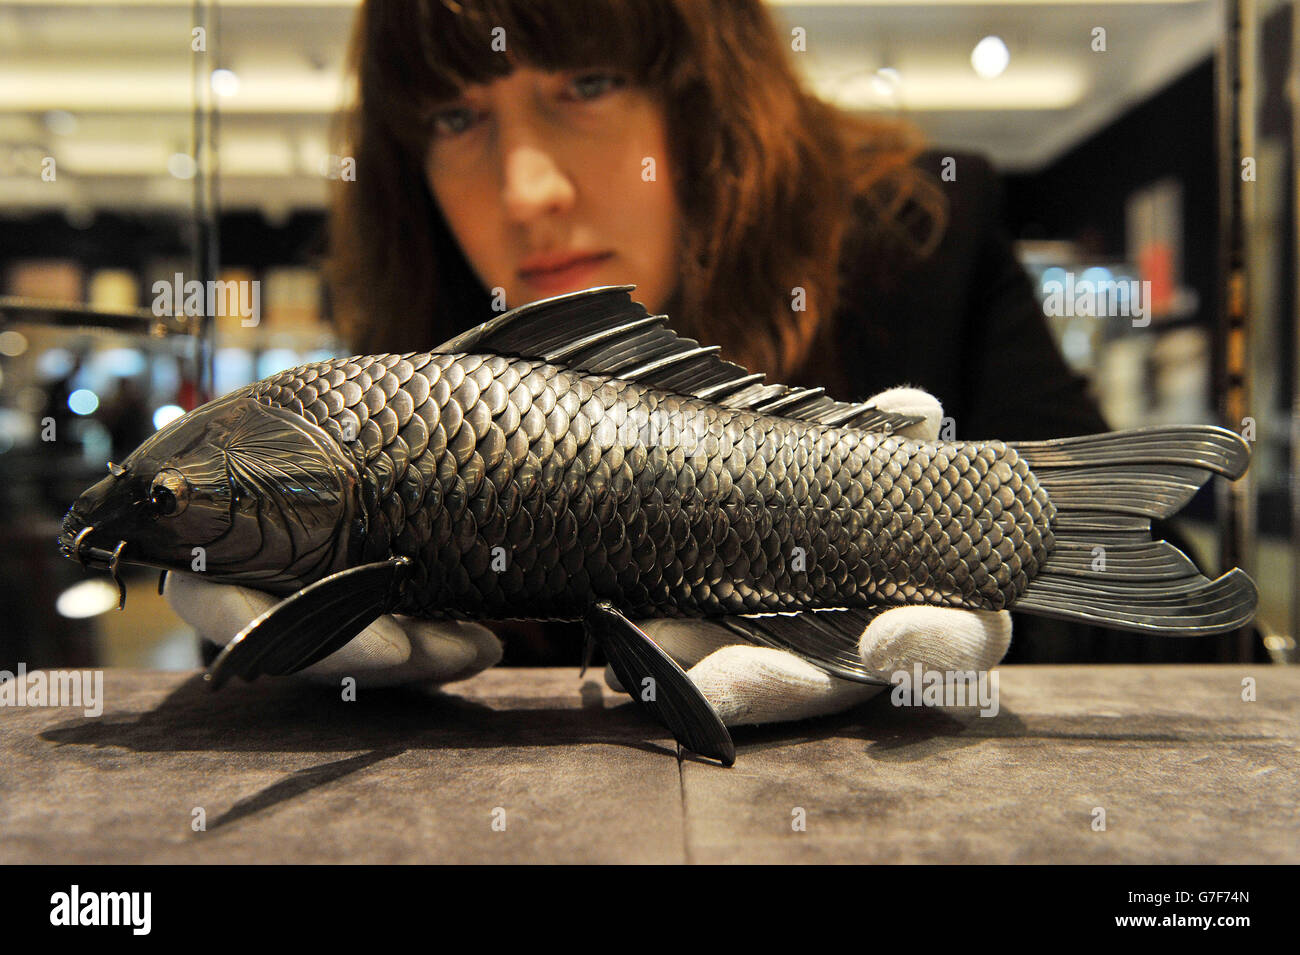 Danielle DeMartini, membro dello staff di Bonhams, detiene una carpa articolata in argento puro di Takase Torakichi, conosciuta come Kozan, stimata a £60,000 - £80,000, durante un'anteprima per il prossimo fine Japanese Art sale di Bonhams nel centro di Londra. Foto Stock